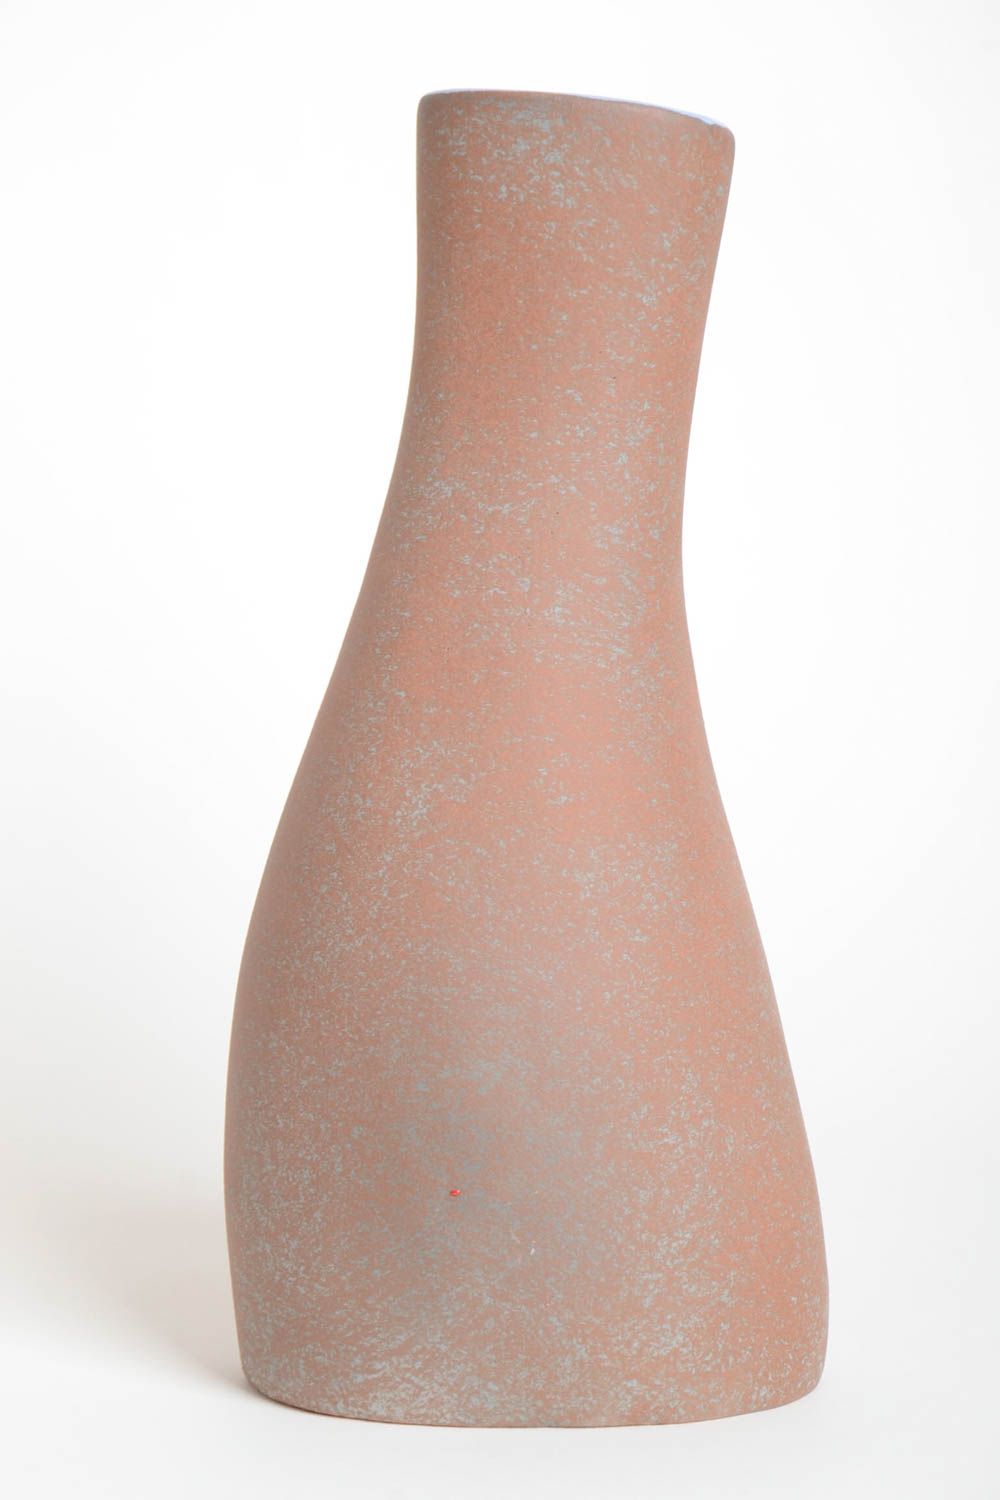 Сувенир ручной работы керамическая ваза эксклюзивный предмет интерьера фото 4